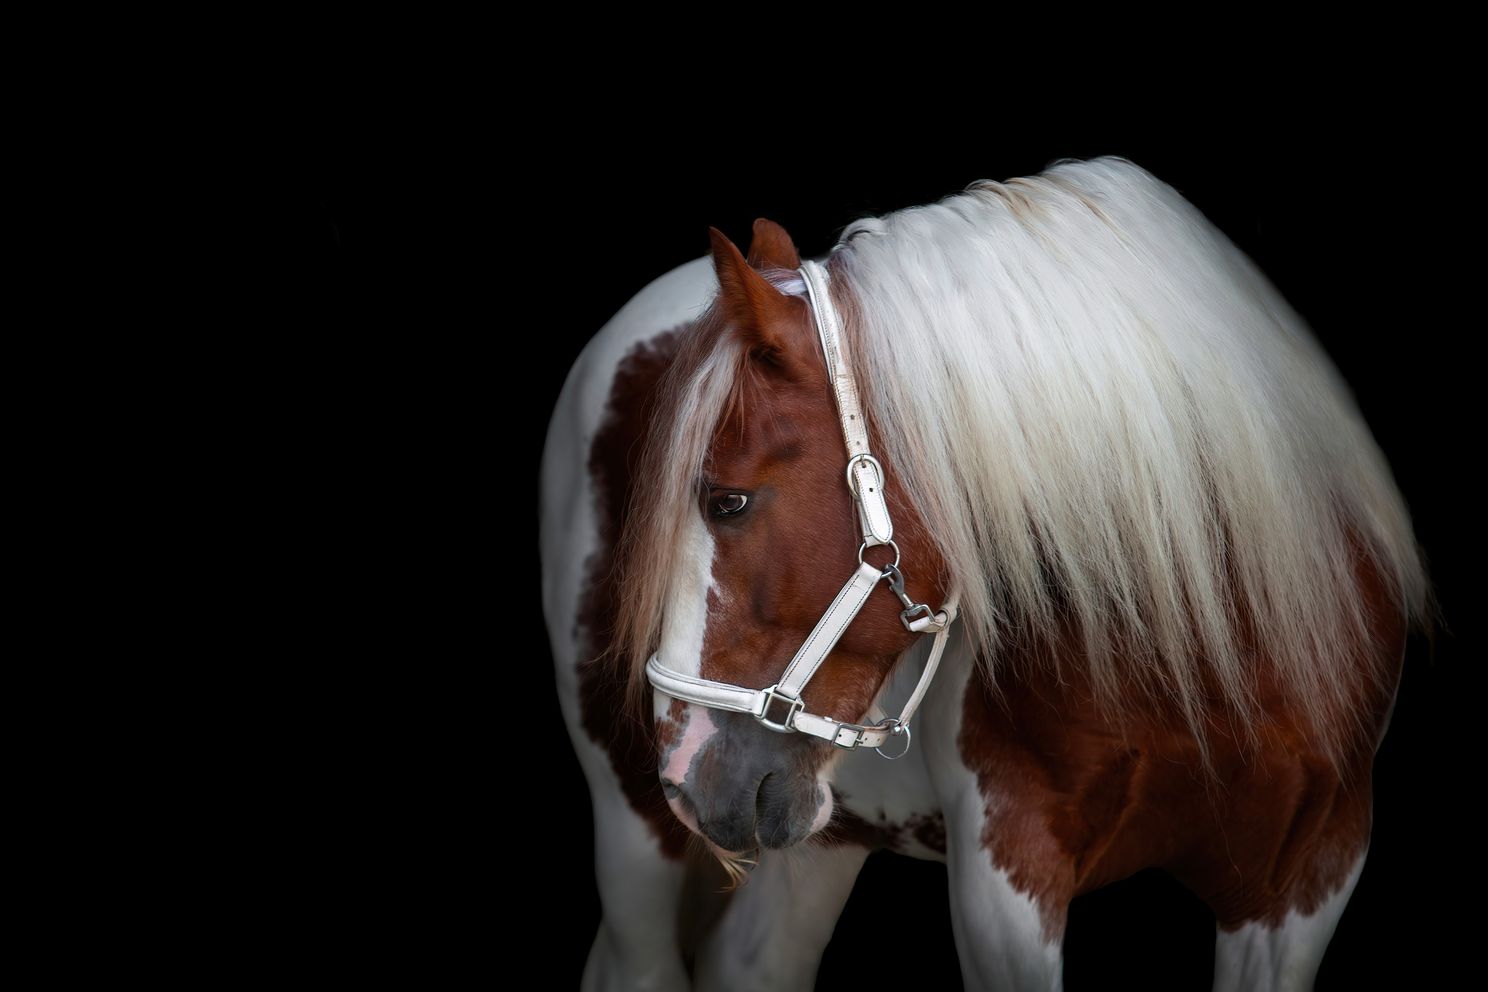 gypsy-vayner-horse-on-black-background.jpg 1